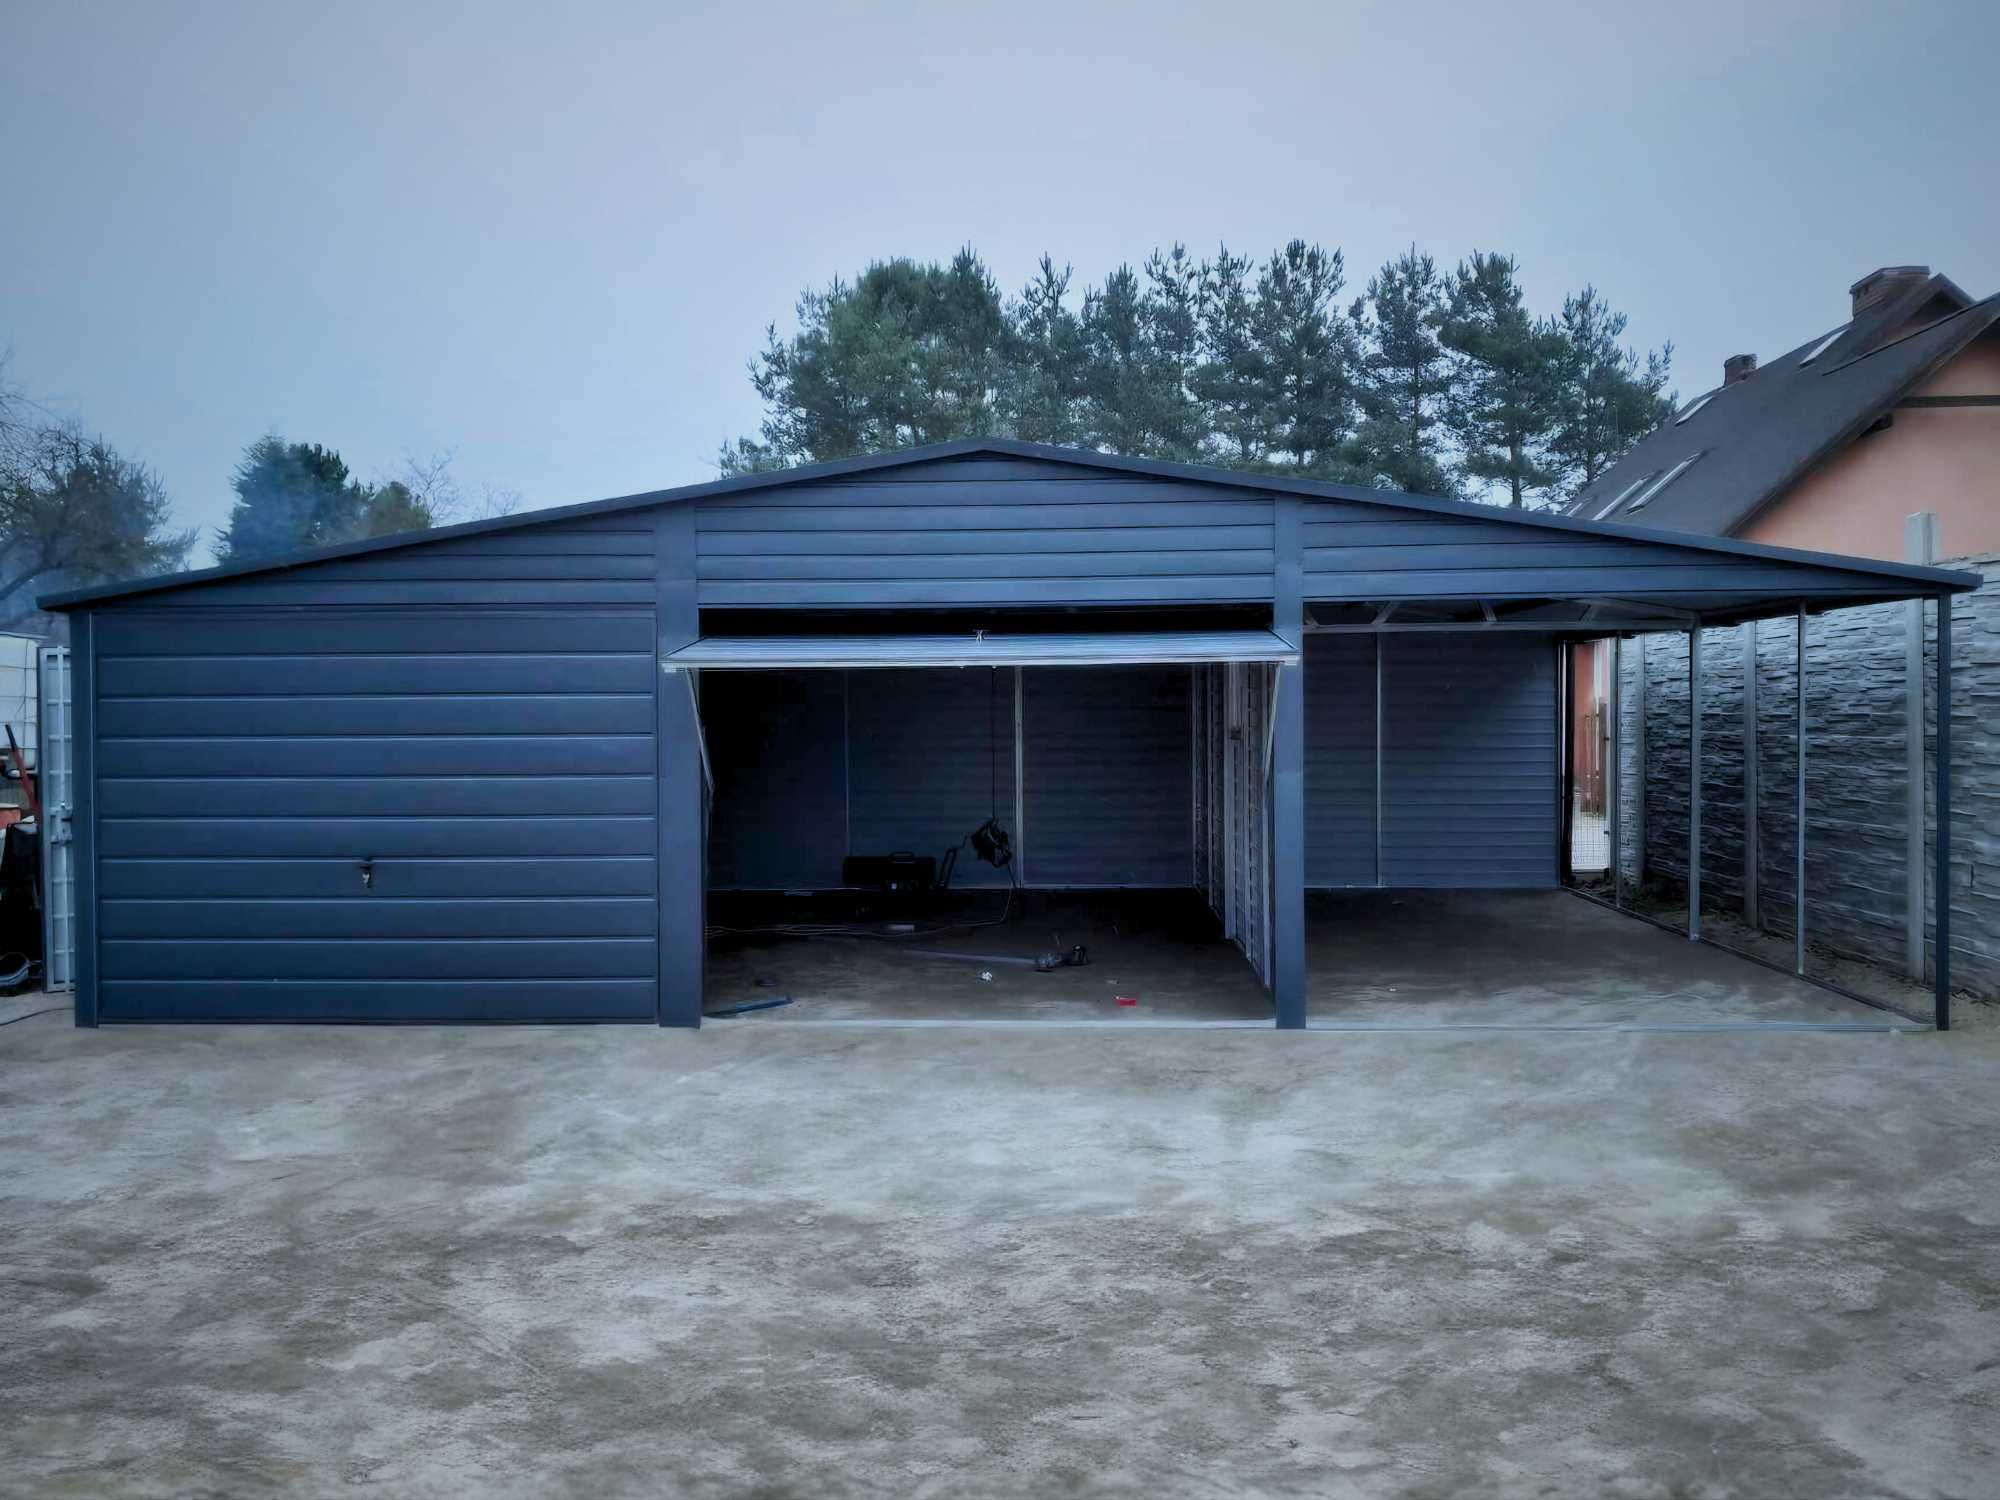 Garaż blaszany grafit 3 stanowiska solidna konstrukcja 9x5 (10x6 8x7)